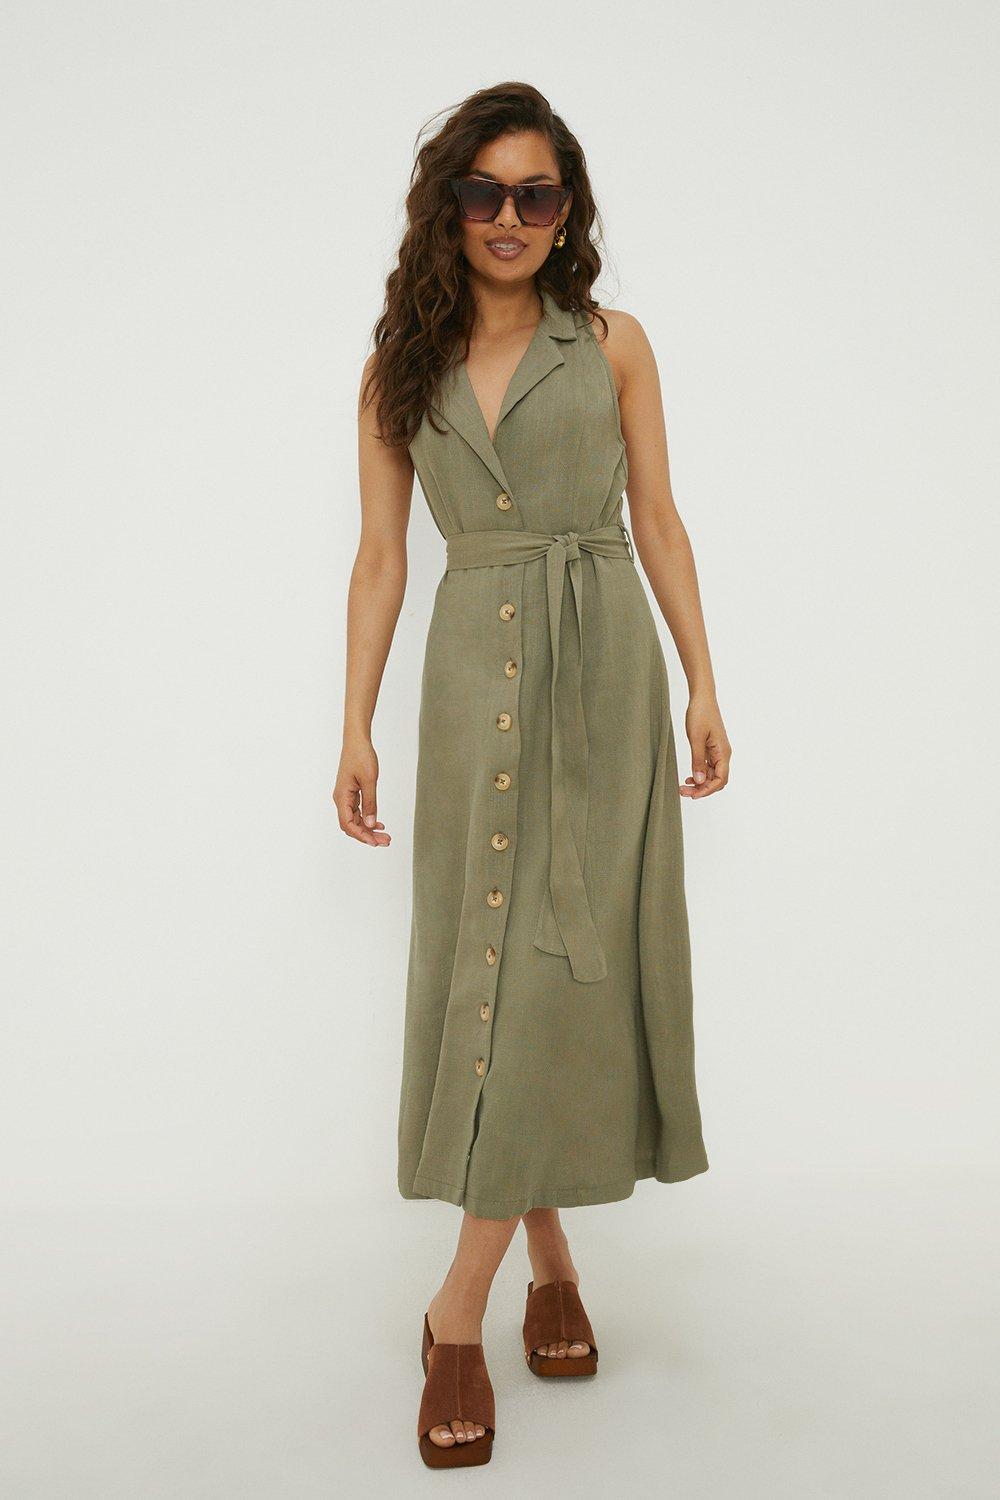 Women’s Petite Linen Button Front Sleeveless Dress - khaki - 14